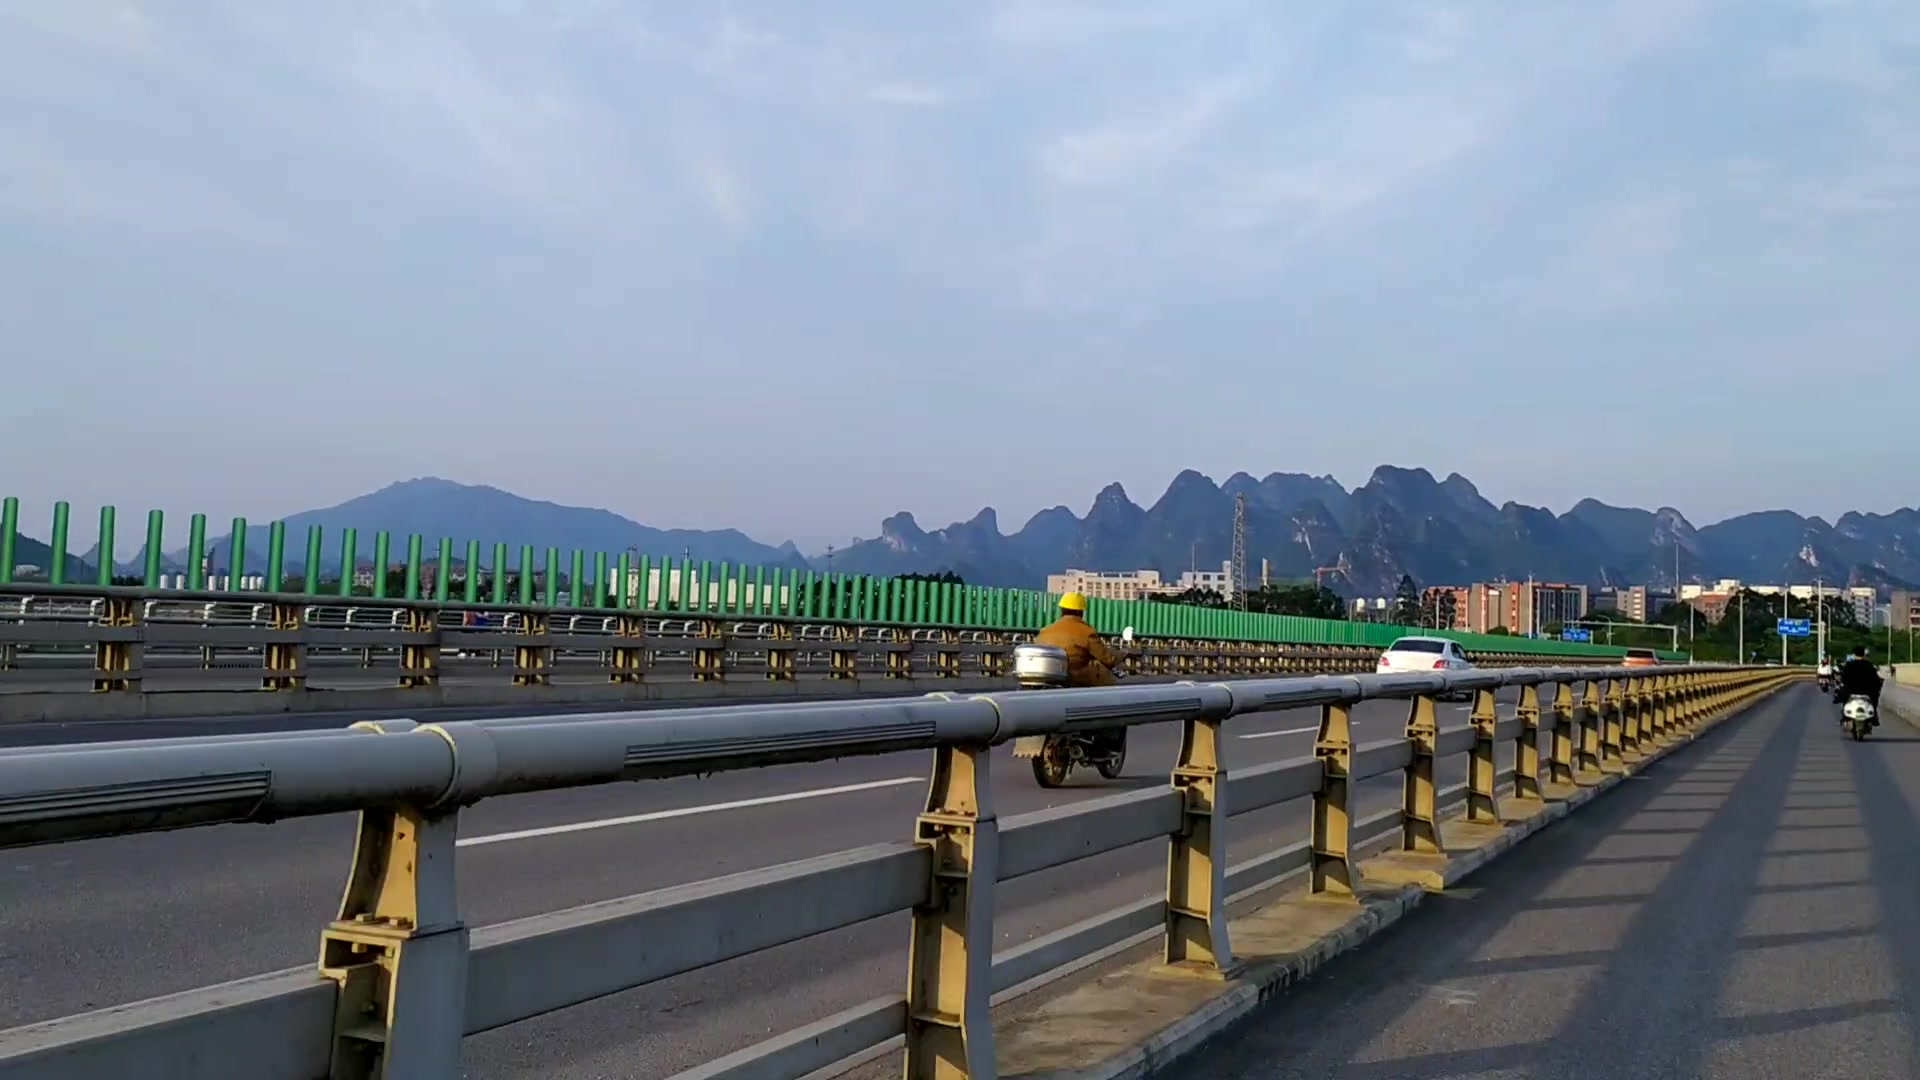 周末骑电动车兜风,路拍万福东路龙门大桥,广西桂林的郊外风景也超美!